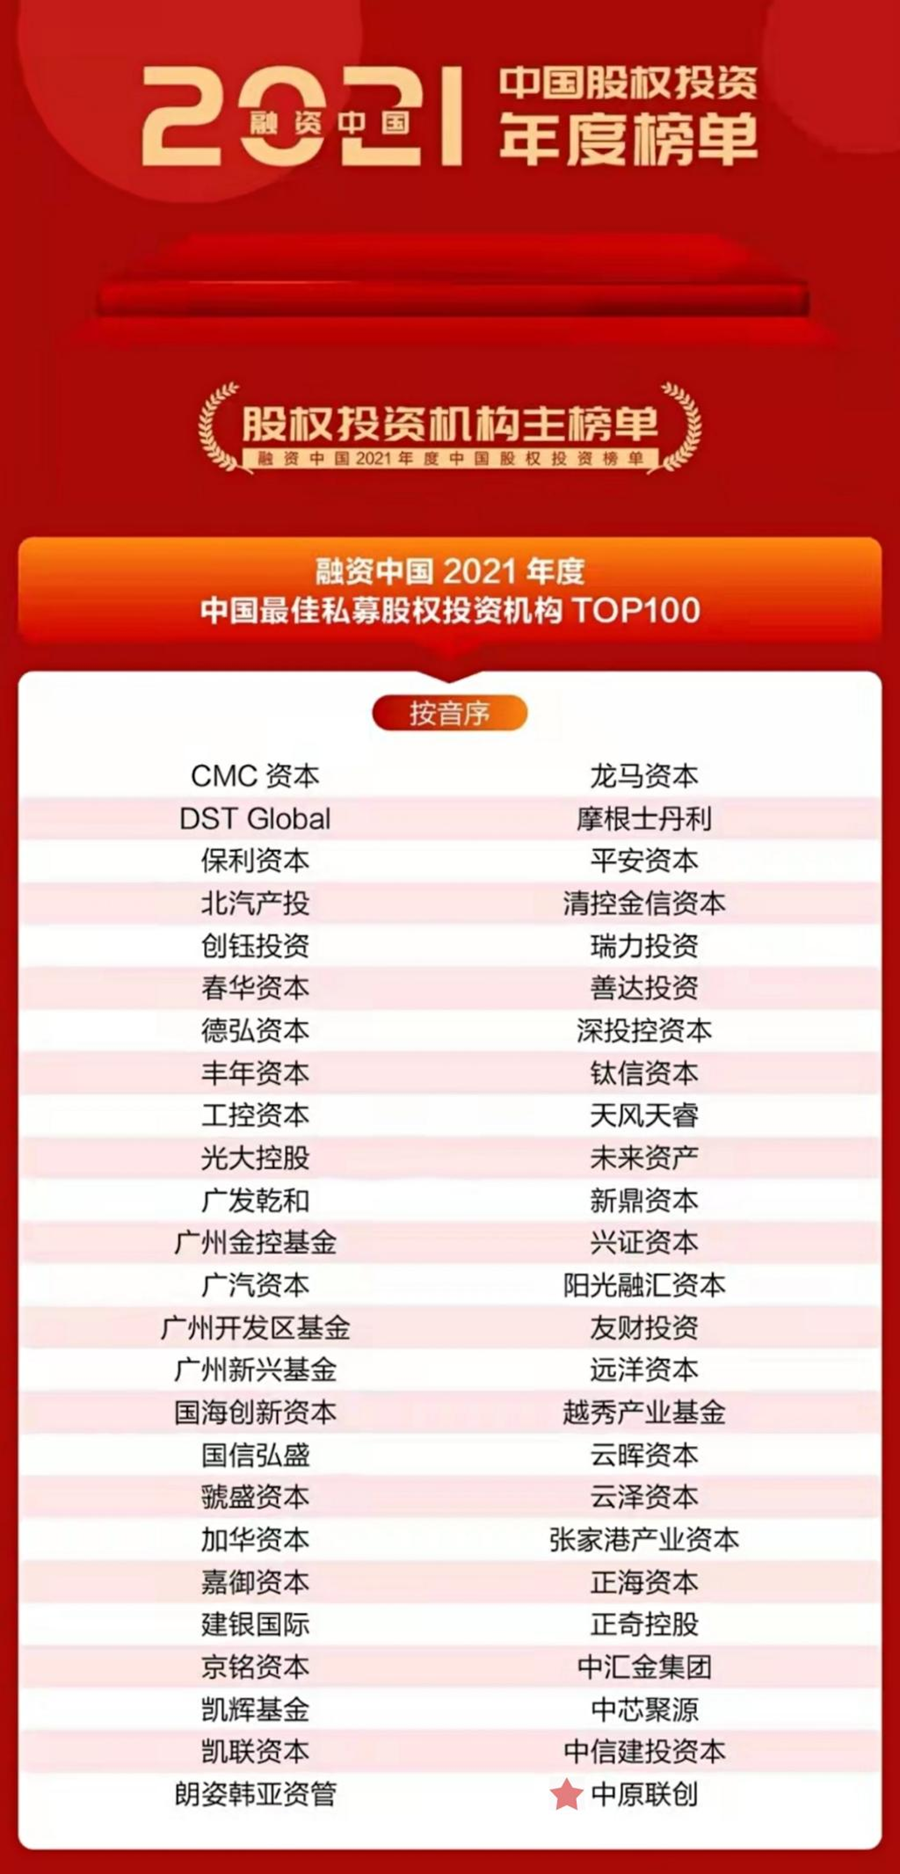 中原联创荣登“融资中国2021年度  中国最佳私募股权投资机构TOP100”榜单